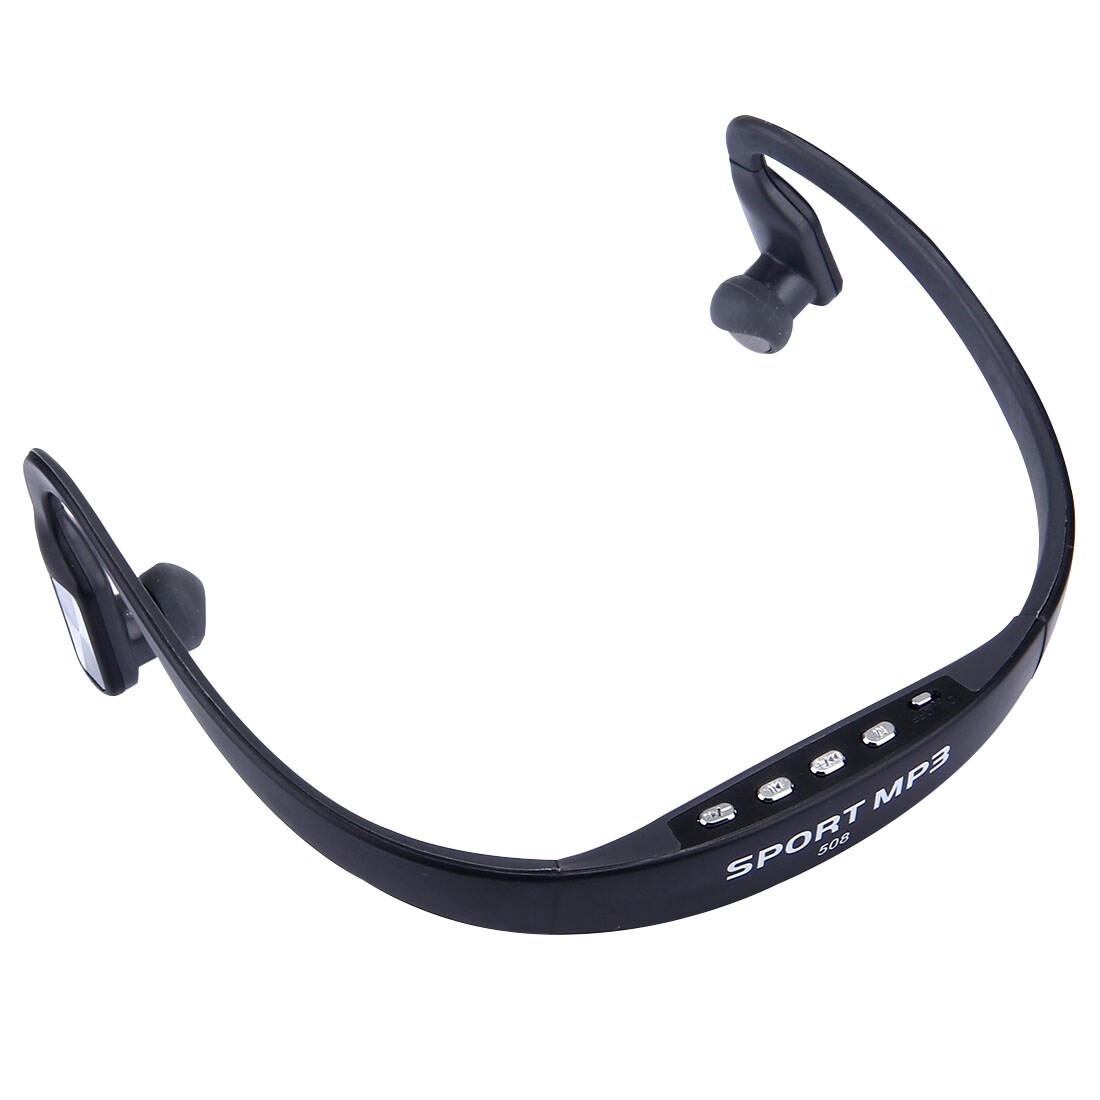 Stereo Sport Earphone In-ear Headset MP3